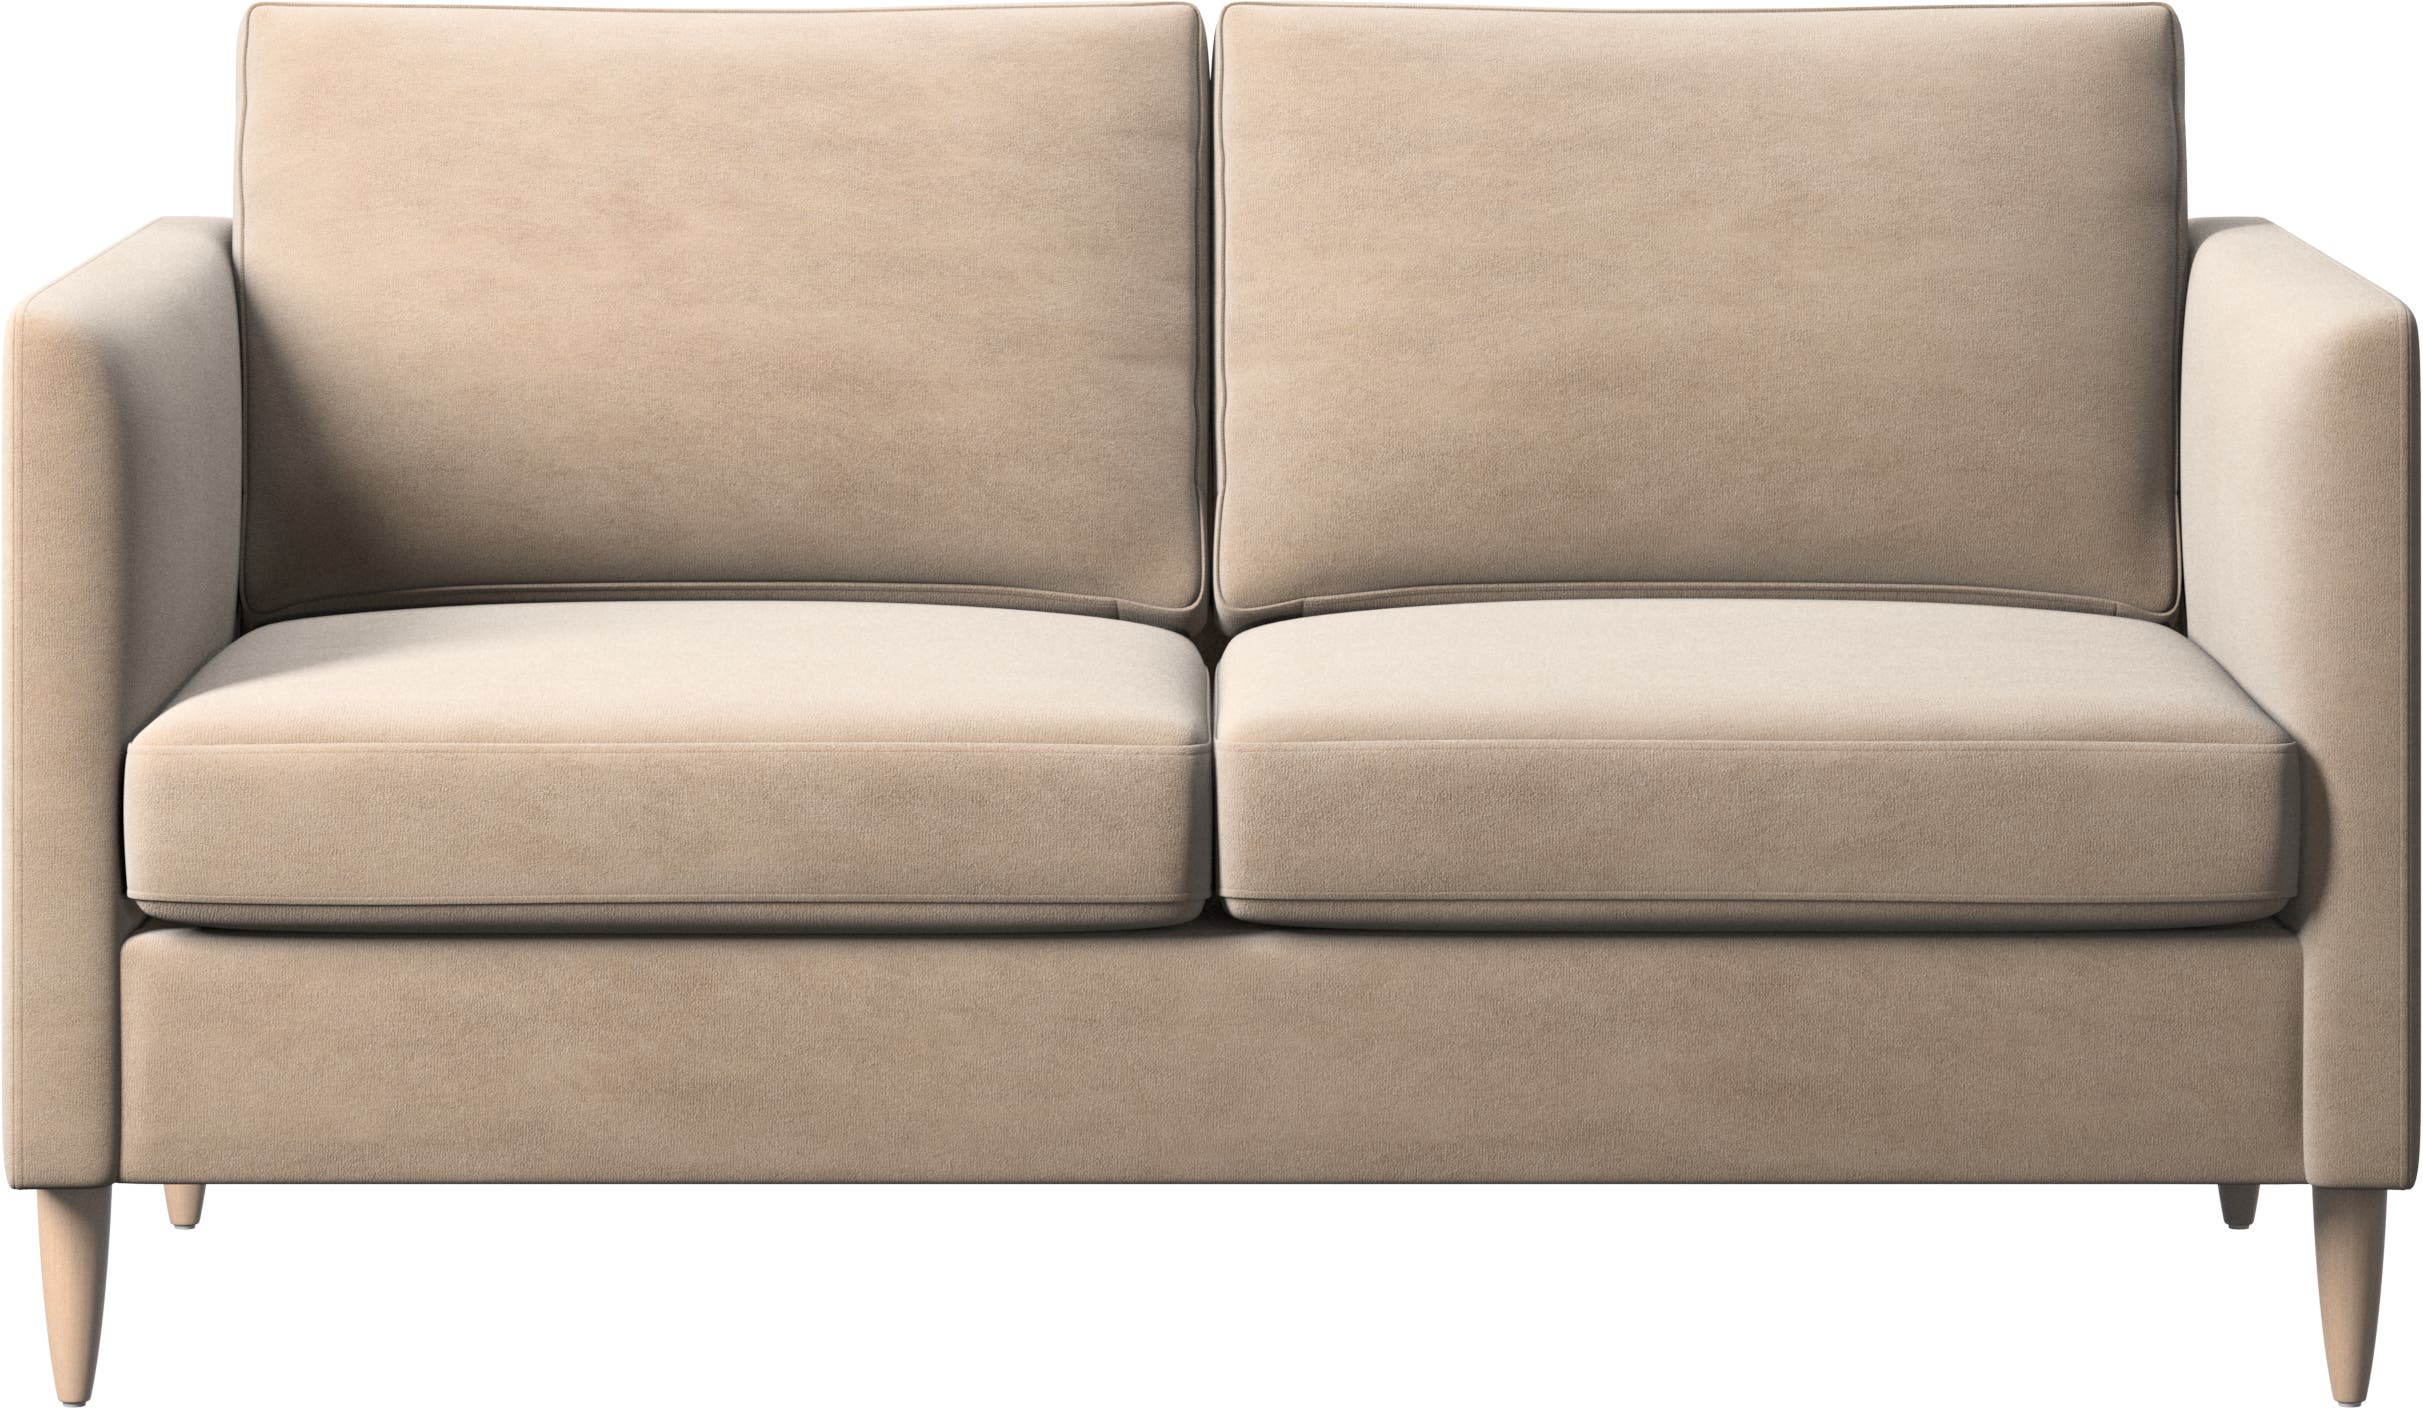 Indivi sofa